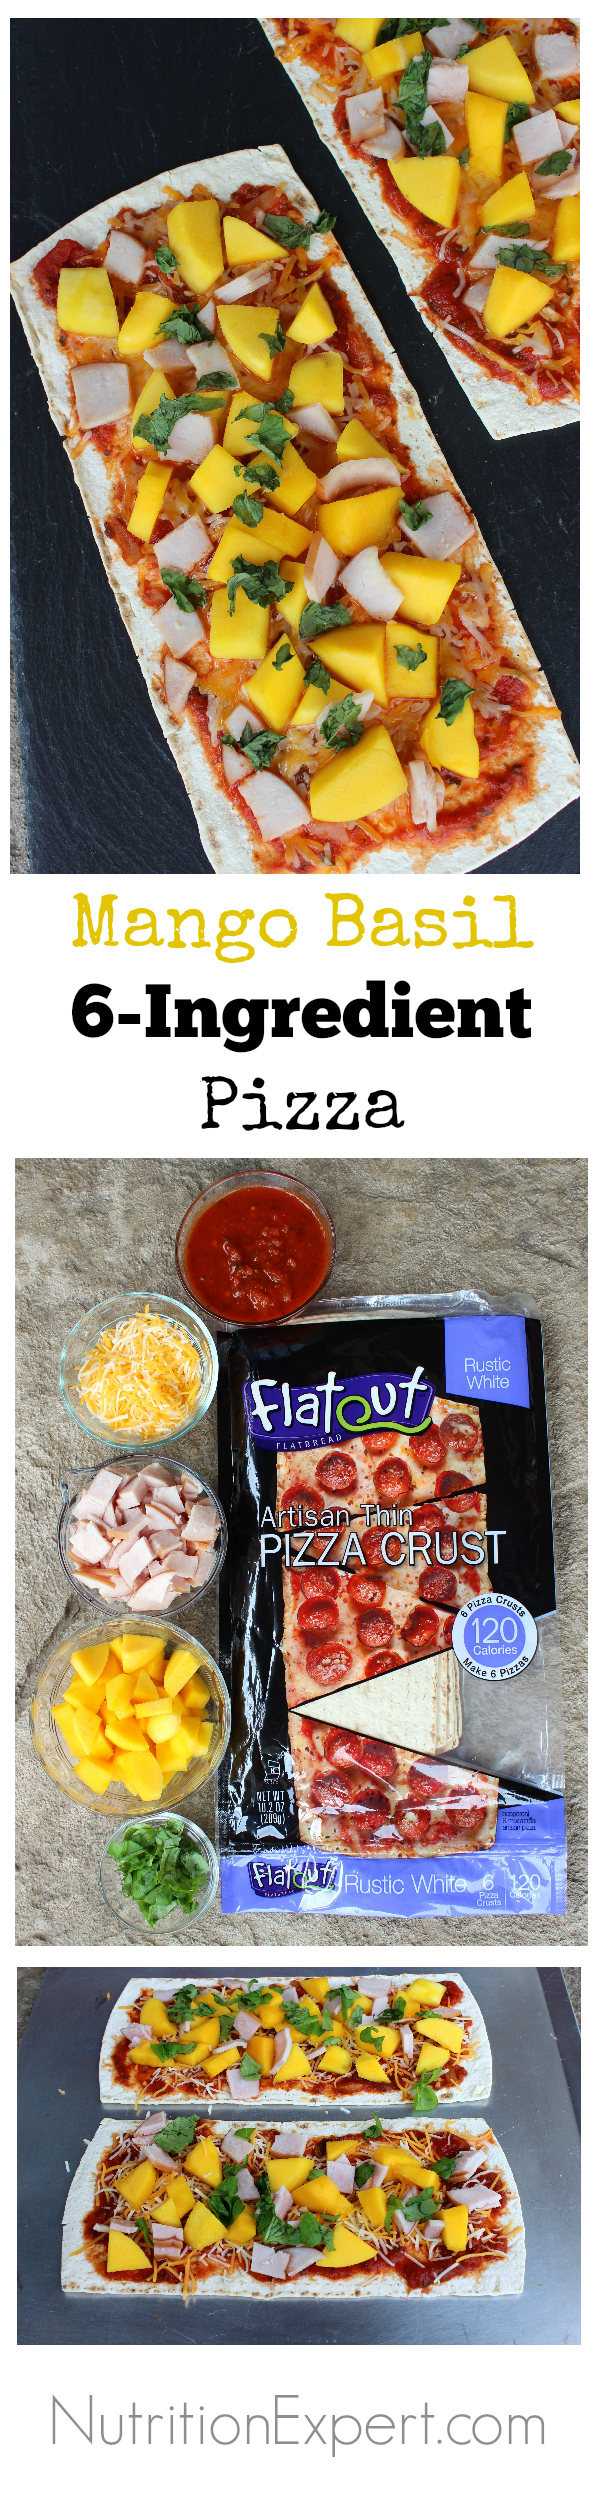 Mango Basil 6-Ingredient Pizza